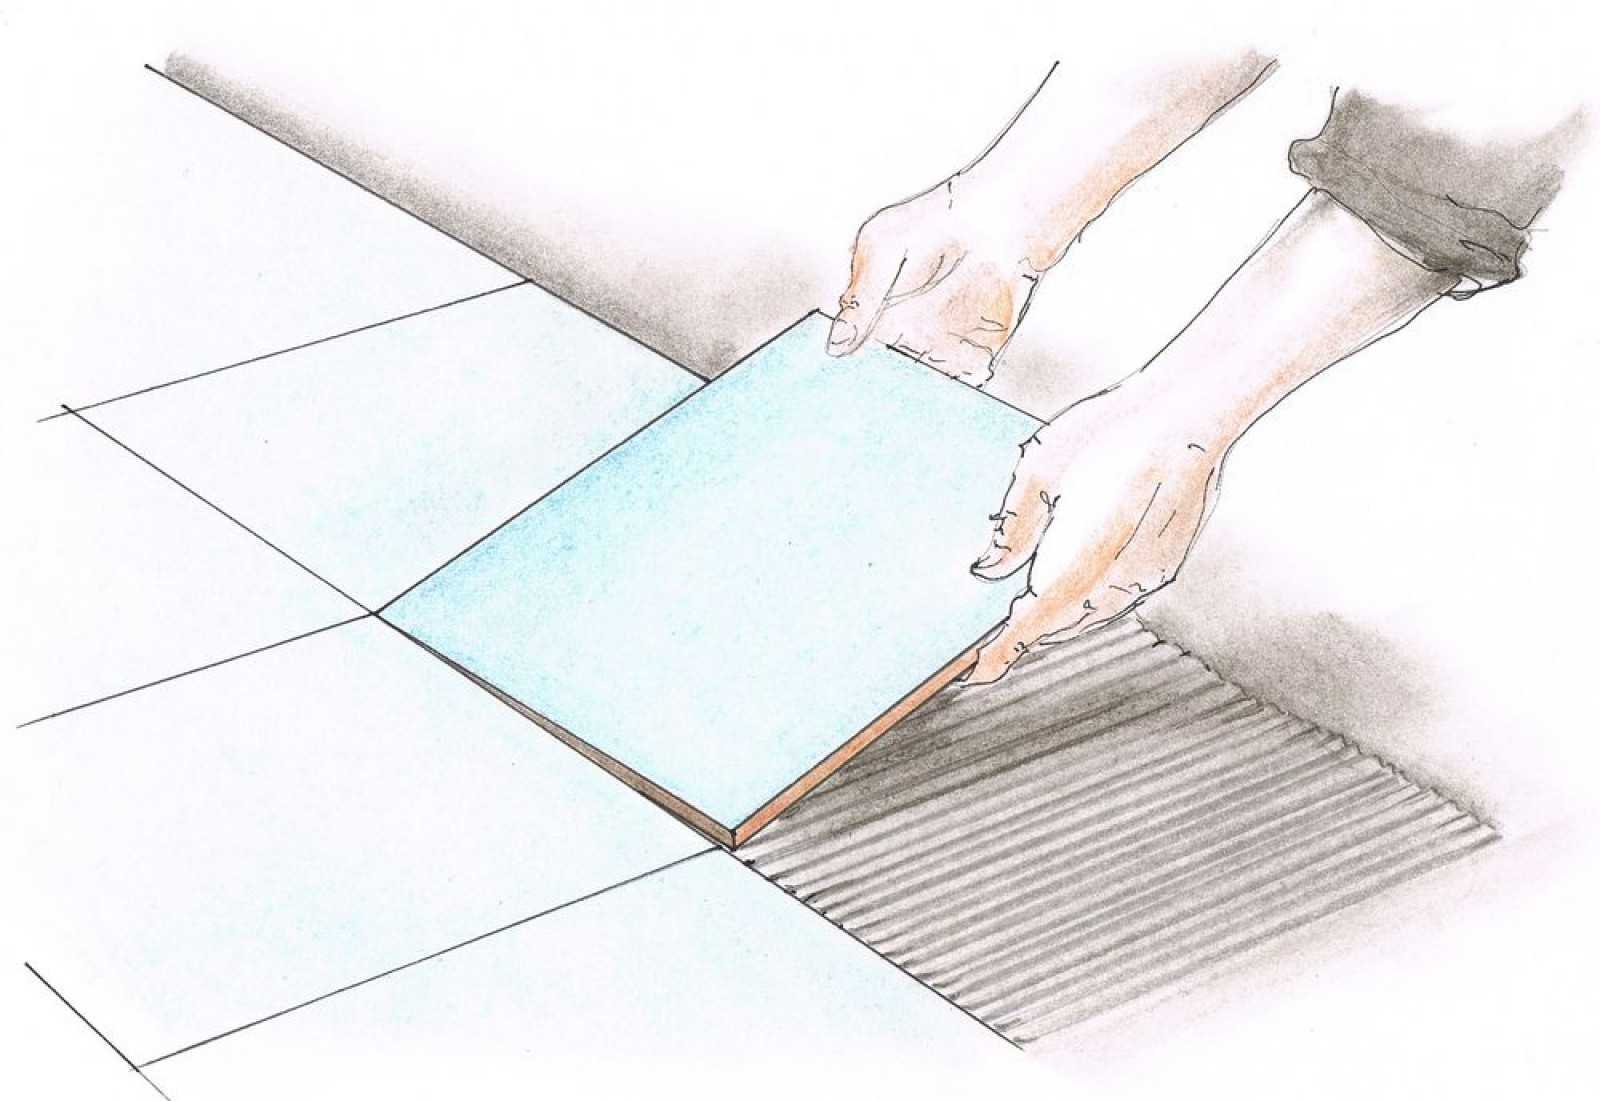 Укладка плитки на пол своими руками: пошаговая инструкция с фото и видео